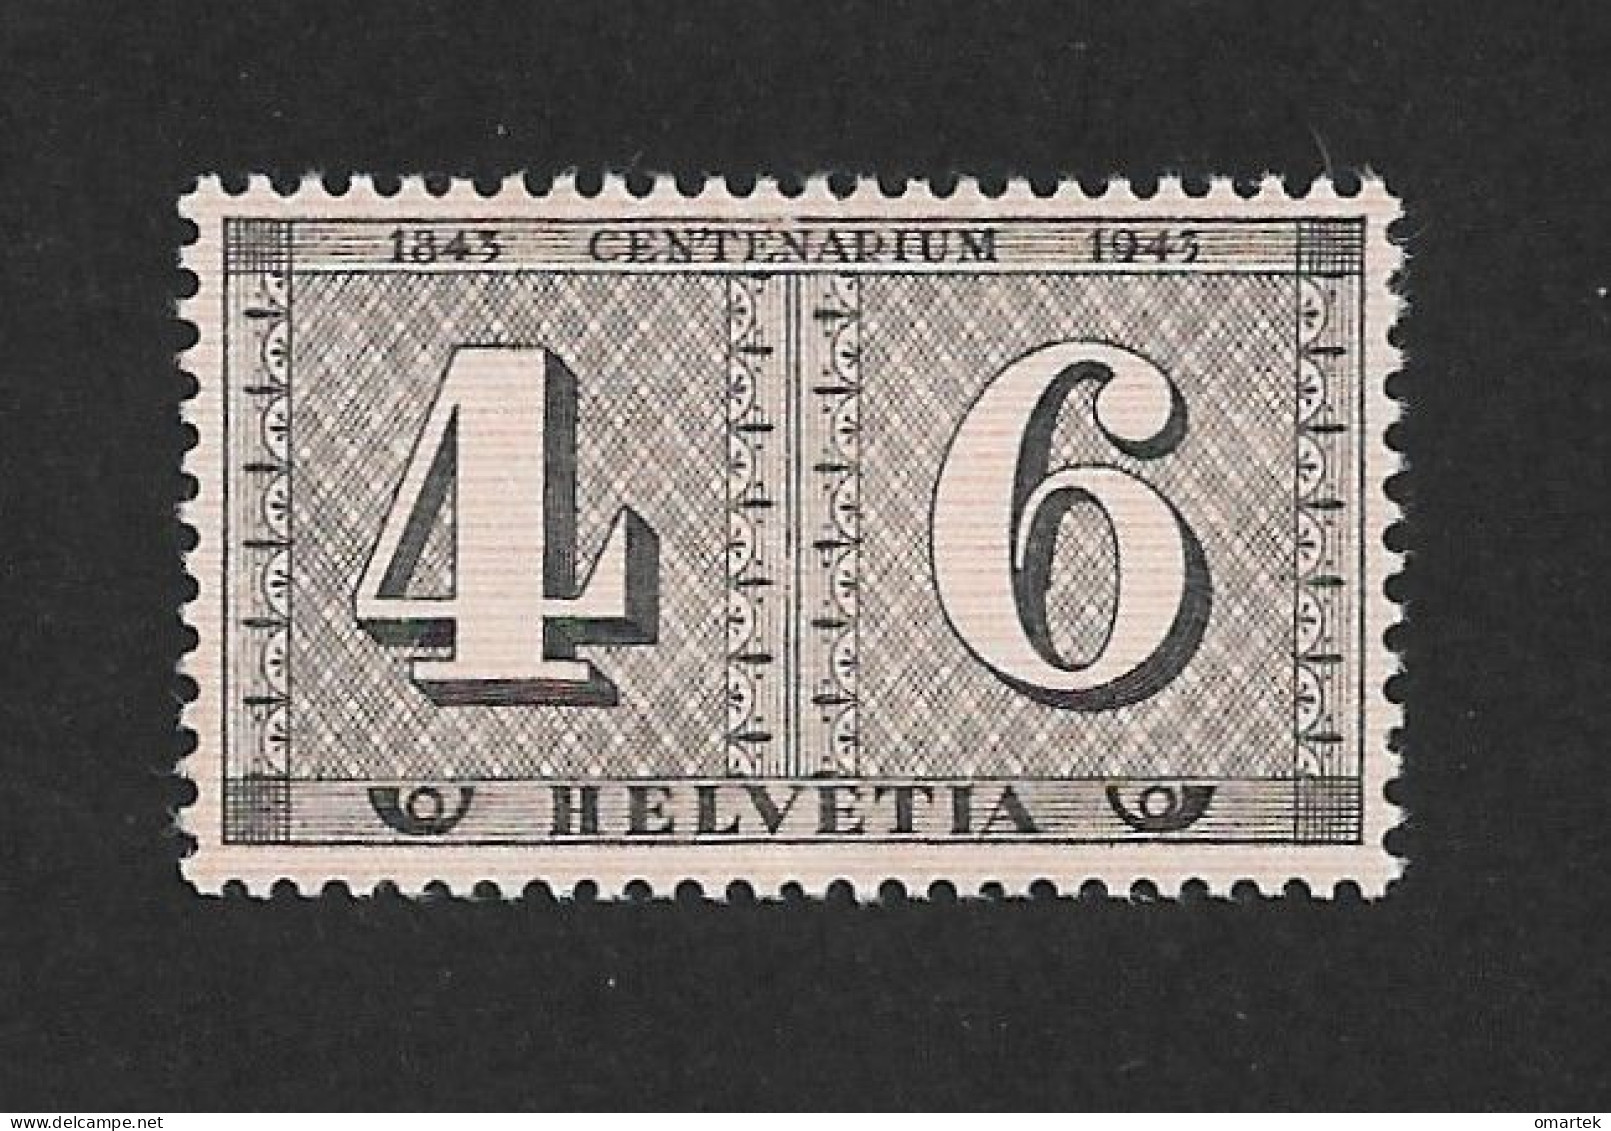 Schweiz Switzerland Helvetia 1943 MNH Mi 416 Sc 287 Zu 258 Yt 384 Stamp Jubilee.. - Neufs